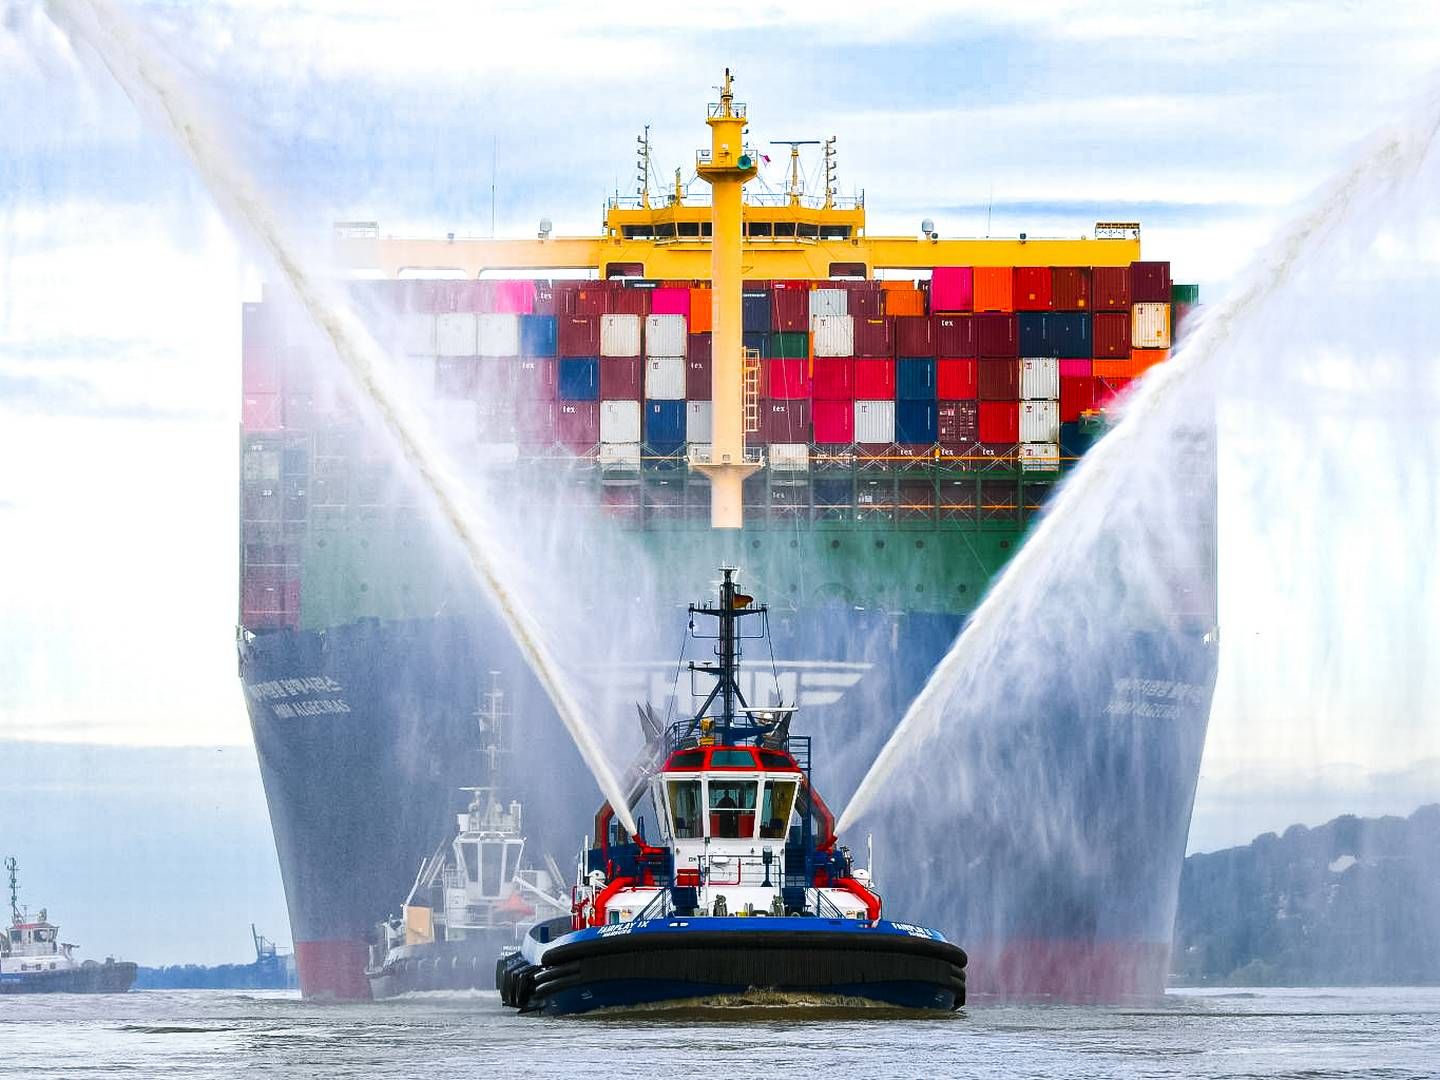 En samlet aktiepost på 40 pct. i HMM, som er verdens ottende største containerrederi, blev i juli sat til salg af staten. Salget sker gennem de to statsejede banker Korea Development Bank (KDB) og Korea Ocean Business Corp (KOB). | Photo: Hmm